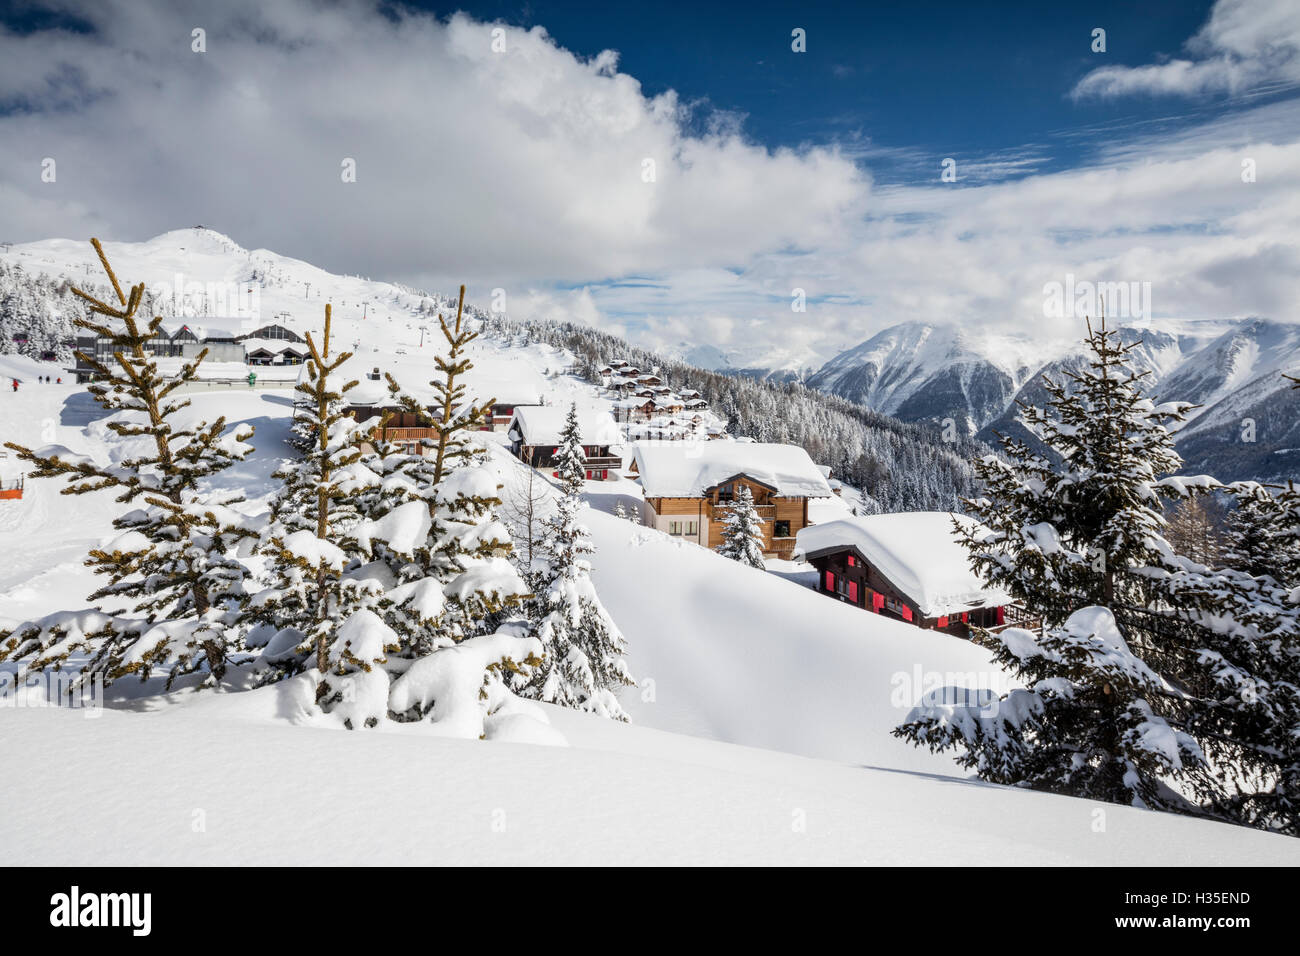 Le soleil d'hiver brille sur les refuges de montagne de neige et de forêts, Bettmeralp, district de Rarogne, canton du Valais, Suisse Banque D'Images